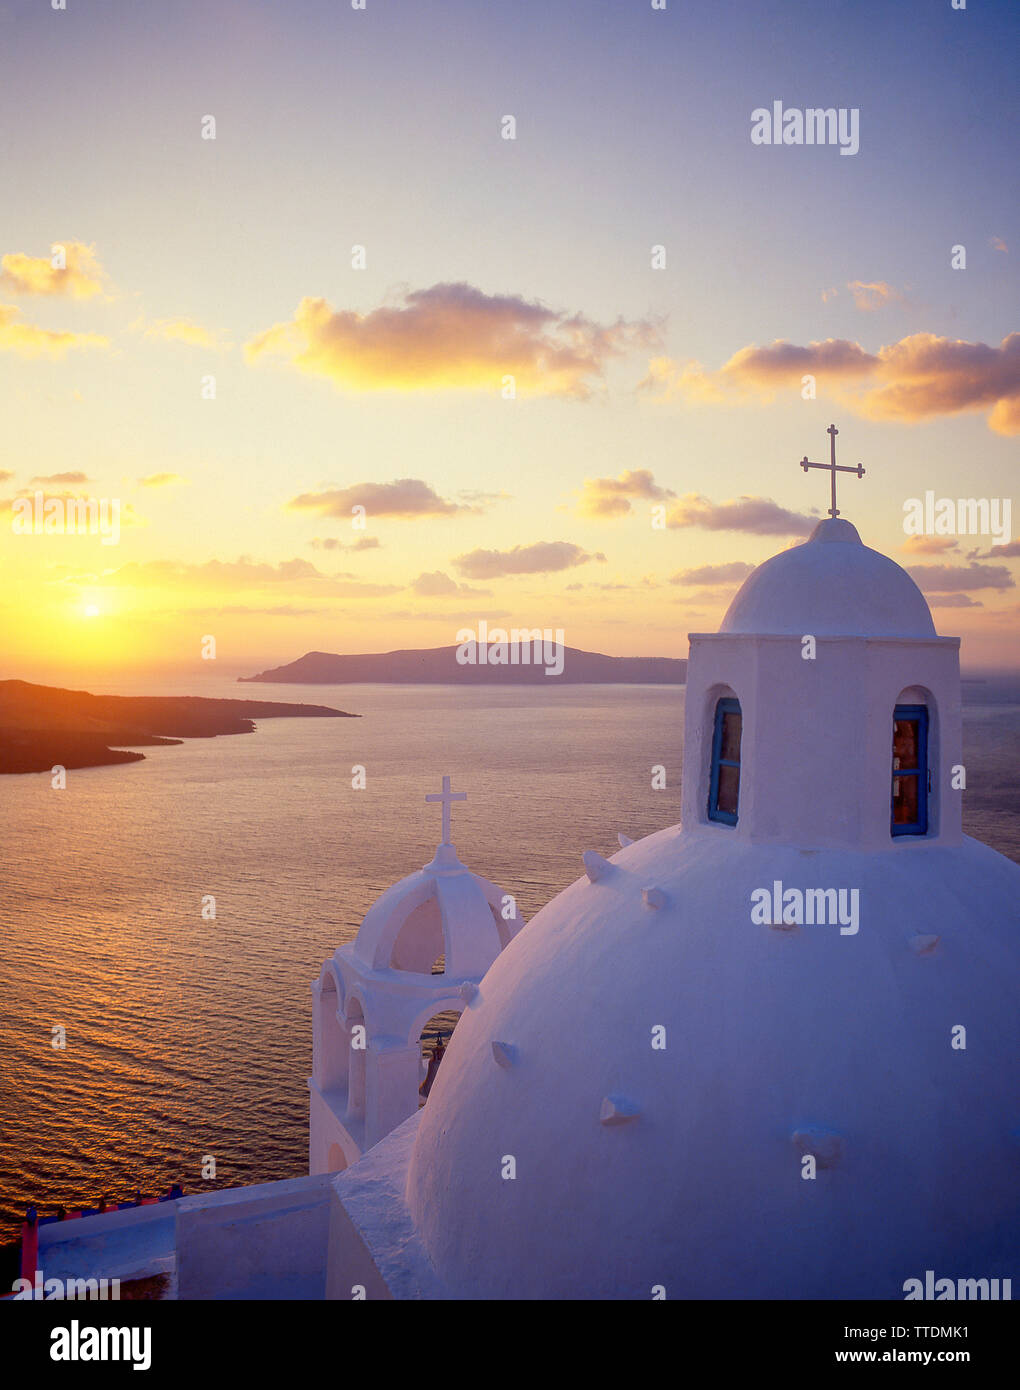 Dôme de l'église au coucher du soleil, Fira, Santorini, Cyclades, Mer Égée, Grèce Région Sud Banque D'Images